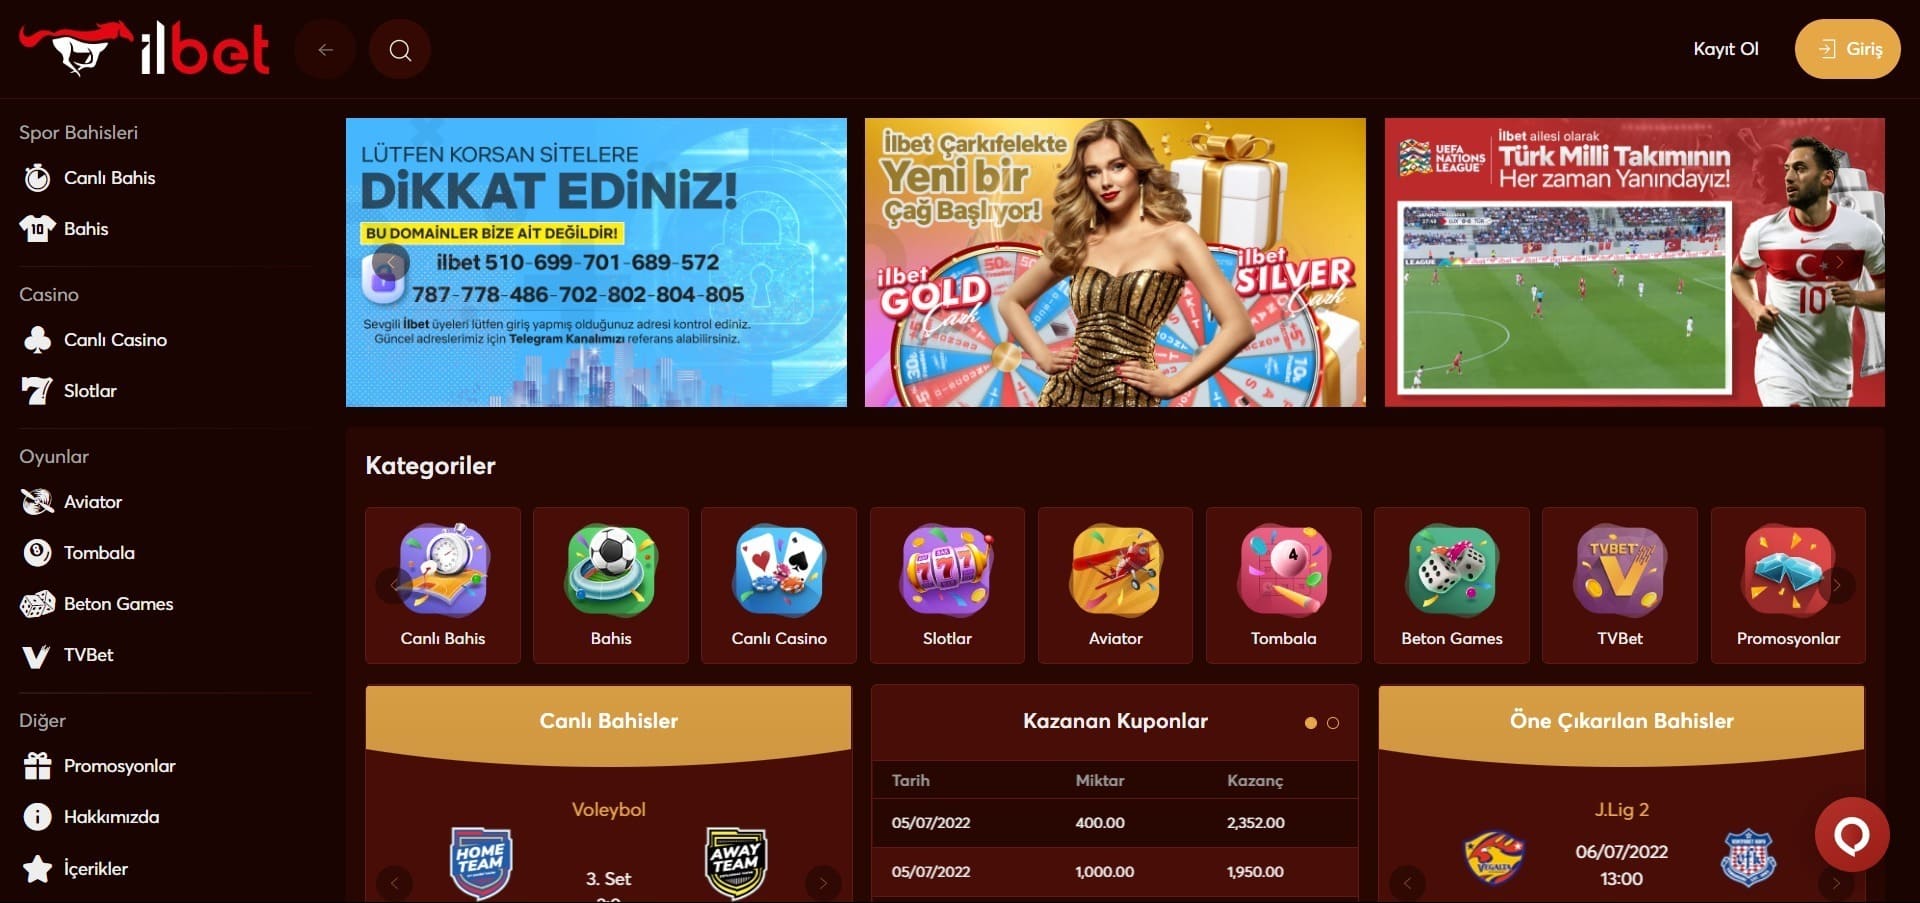 İlbet Casino'nun resmi web sitesi